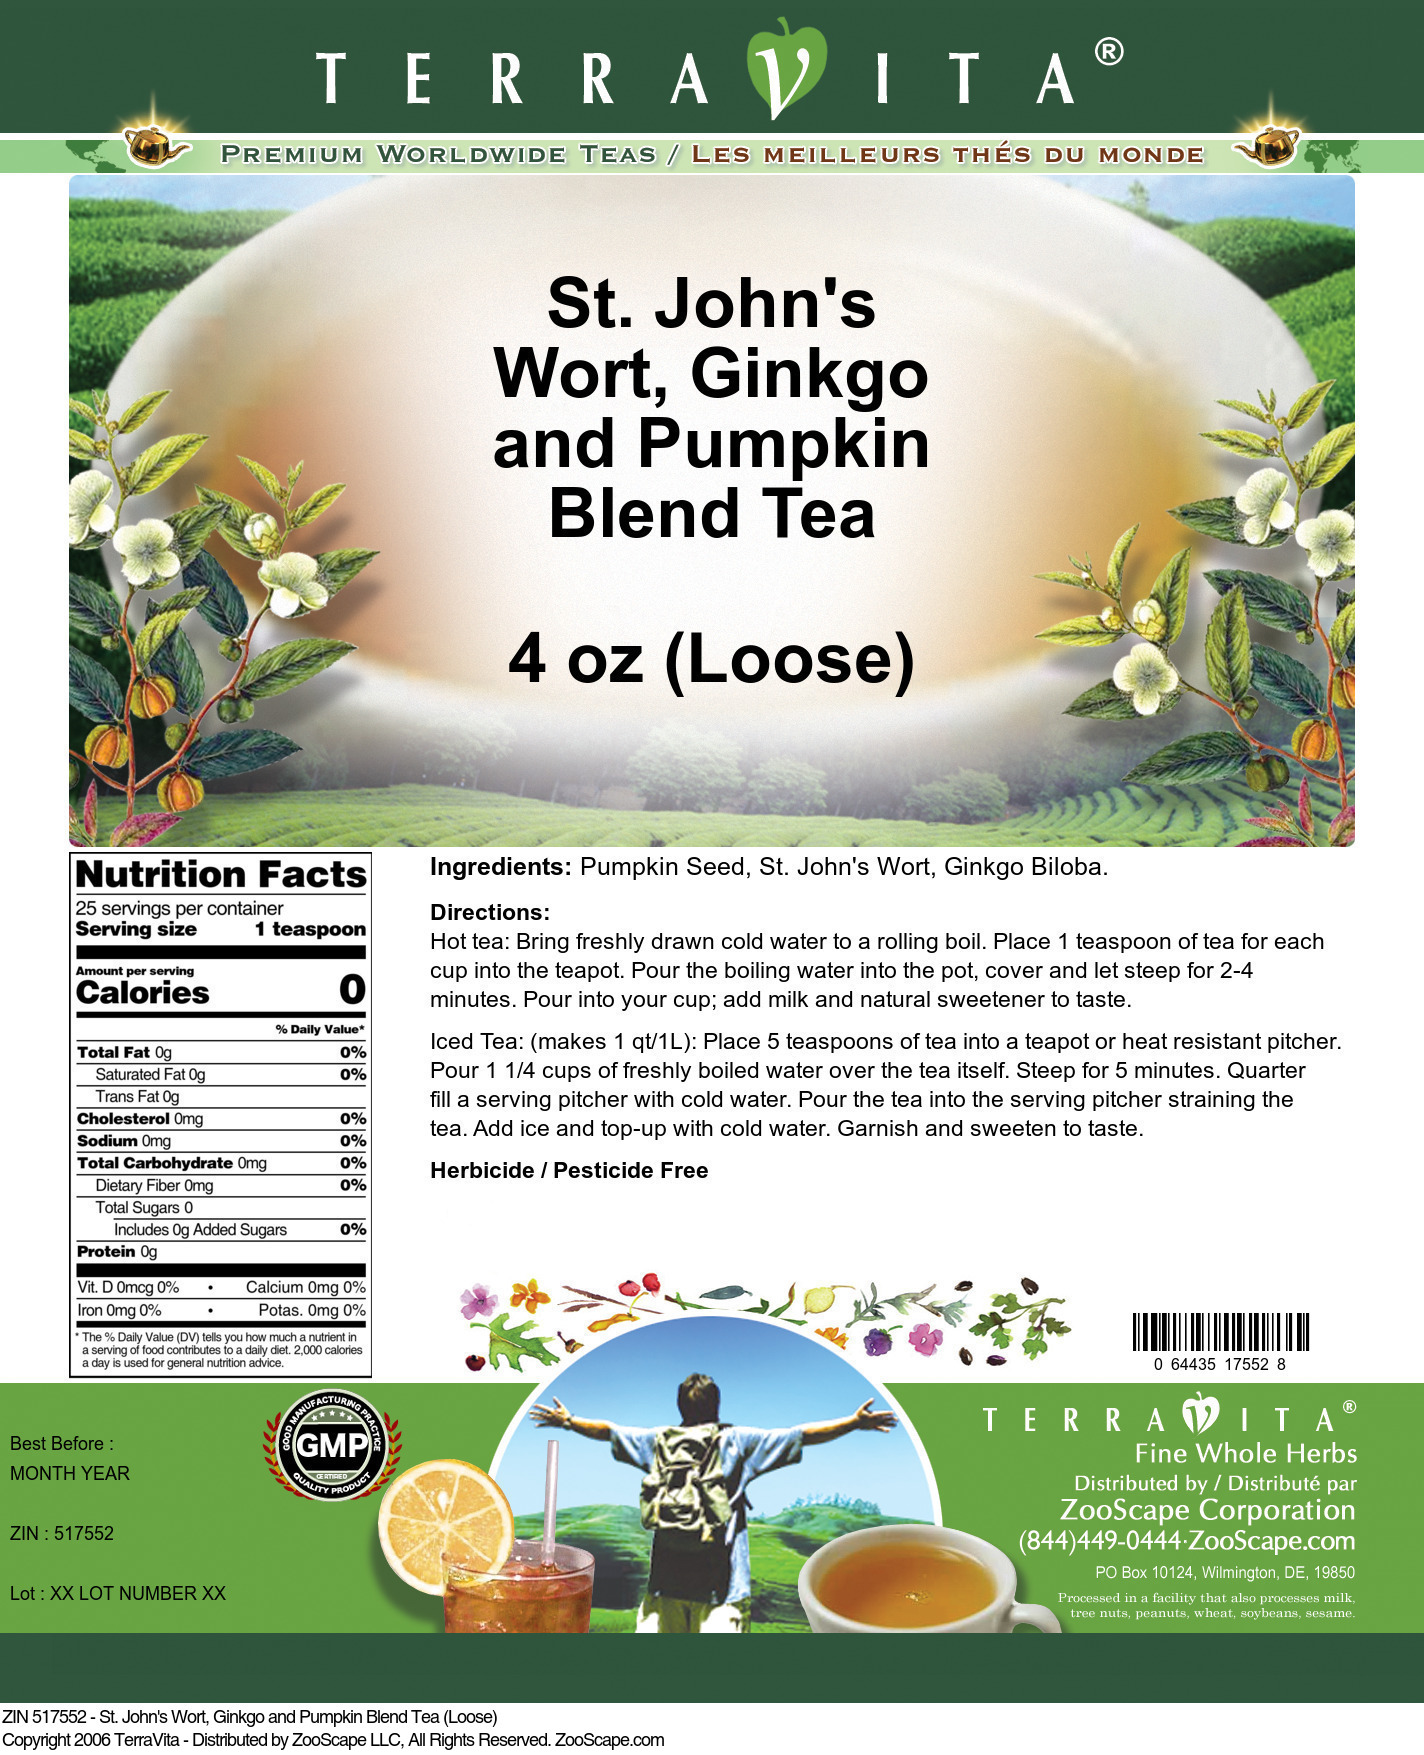 St. John's Wort, Ginkgo and Pumpkin Blend Tea (Loose) - Label